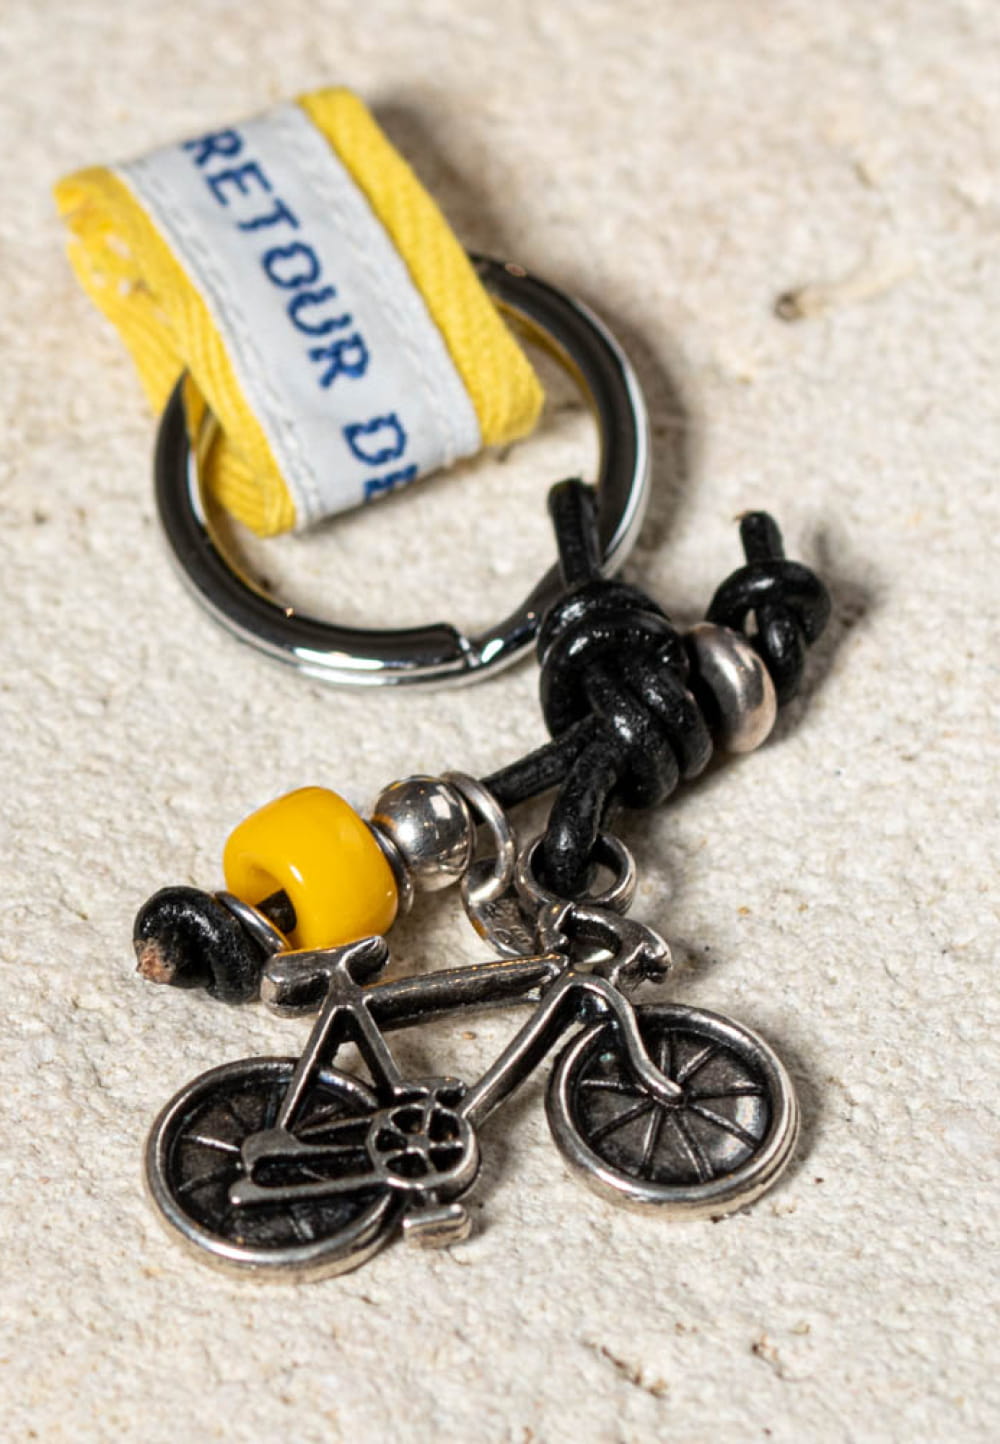 Porte-clefs Vélo argenté, jaune et noir - Retour de plage